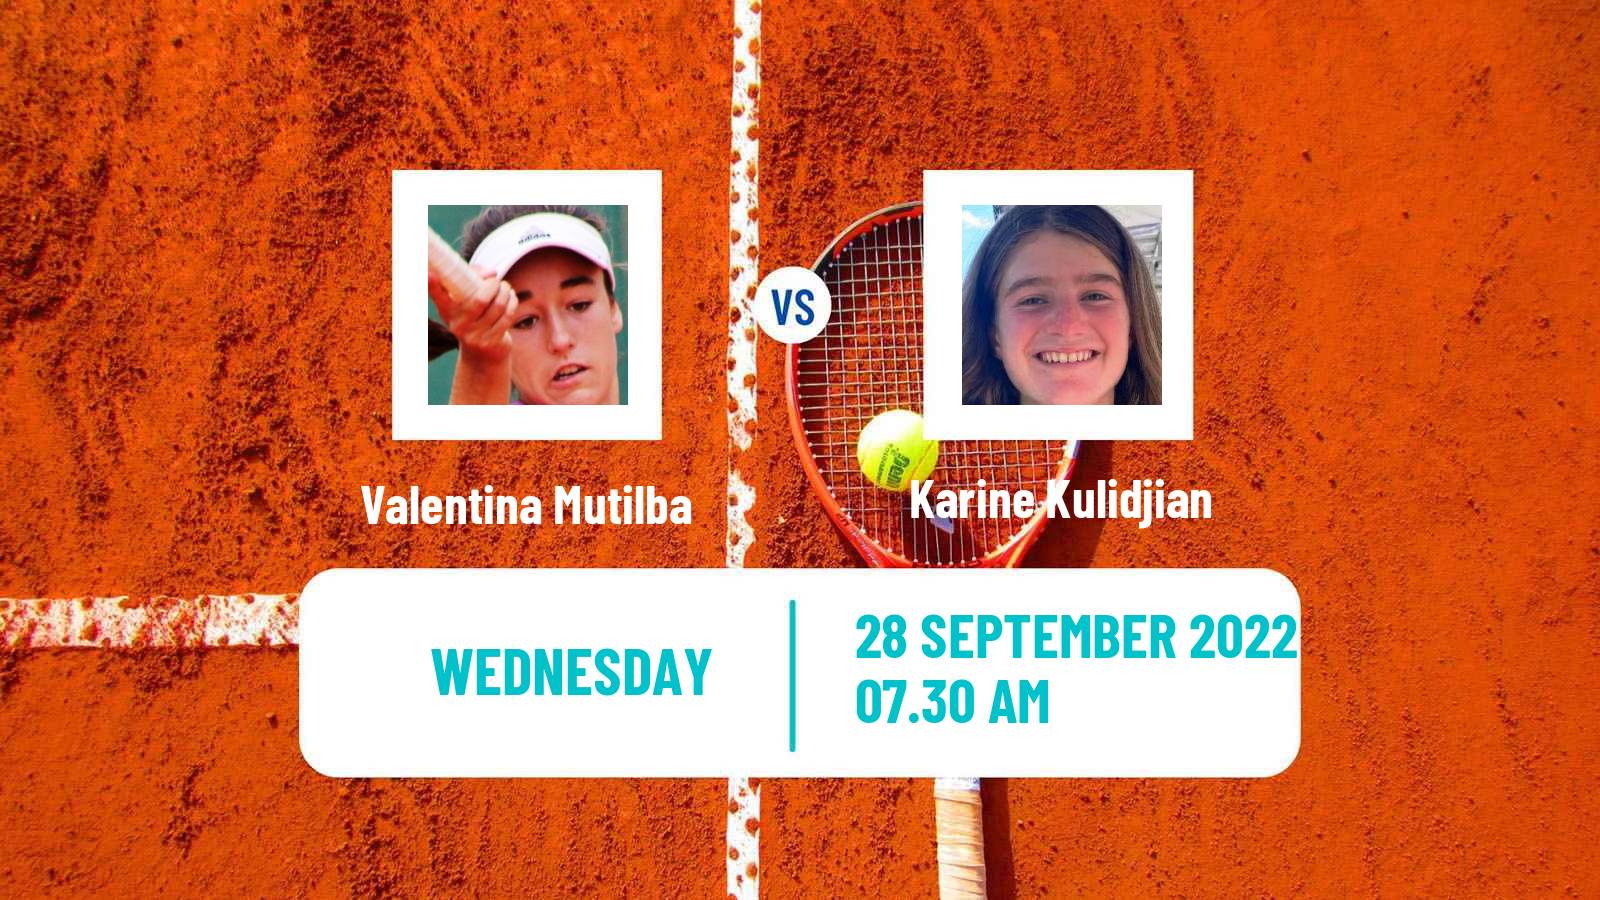 Tennis ITF Tournaments Valentina Mutilba - Karine Kulidjian